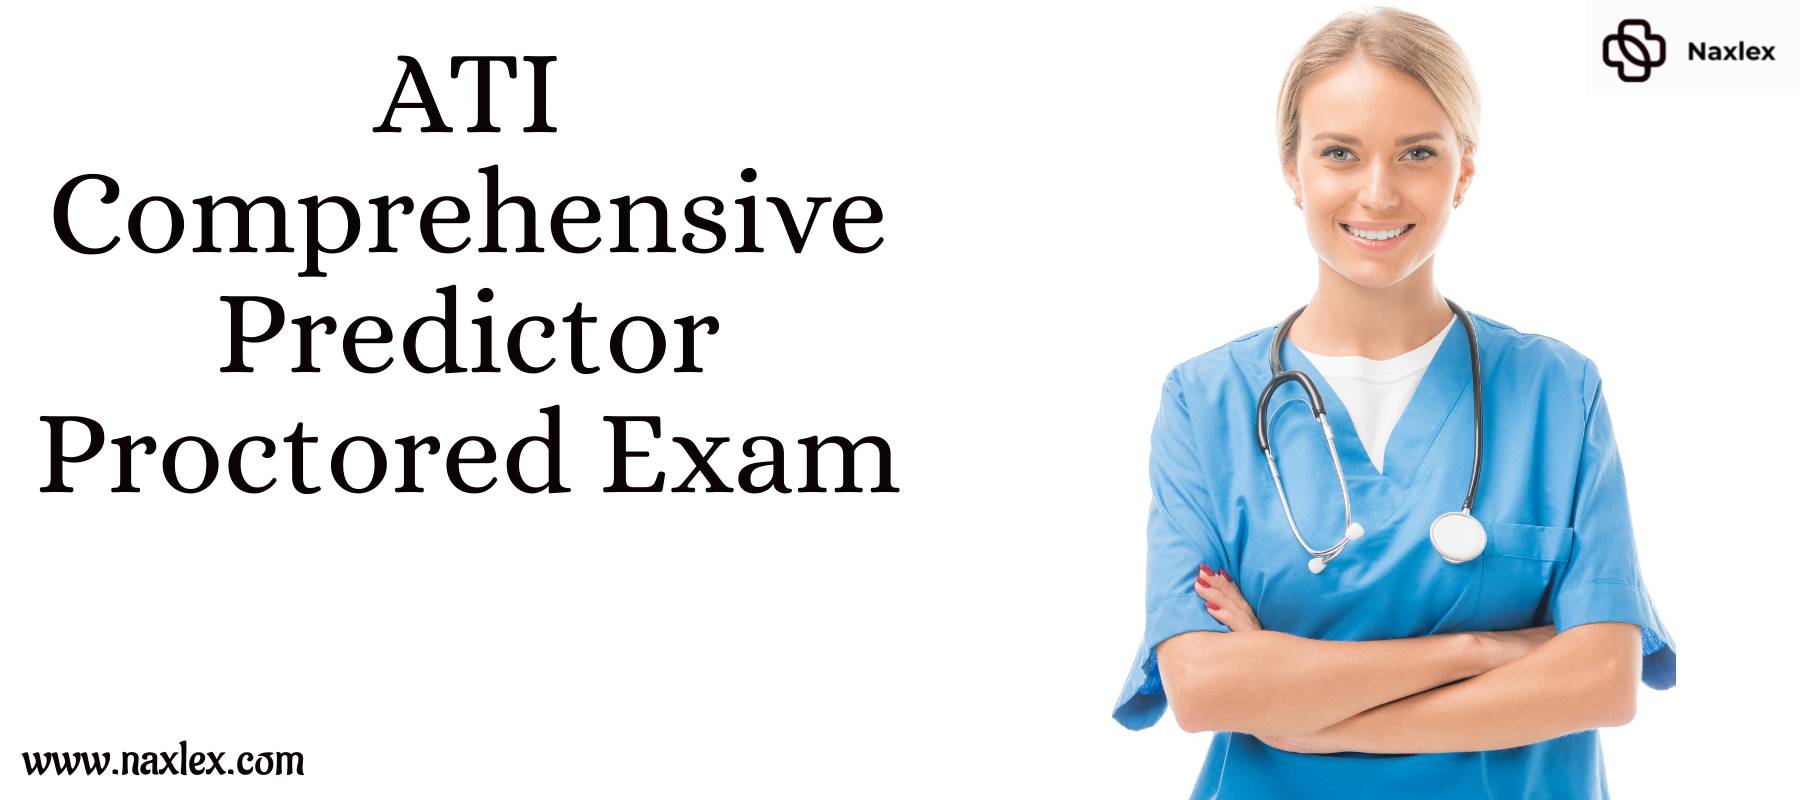 ATI Comprehensive Predictor Proctored Exam